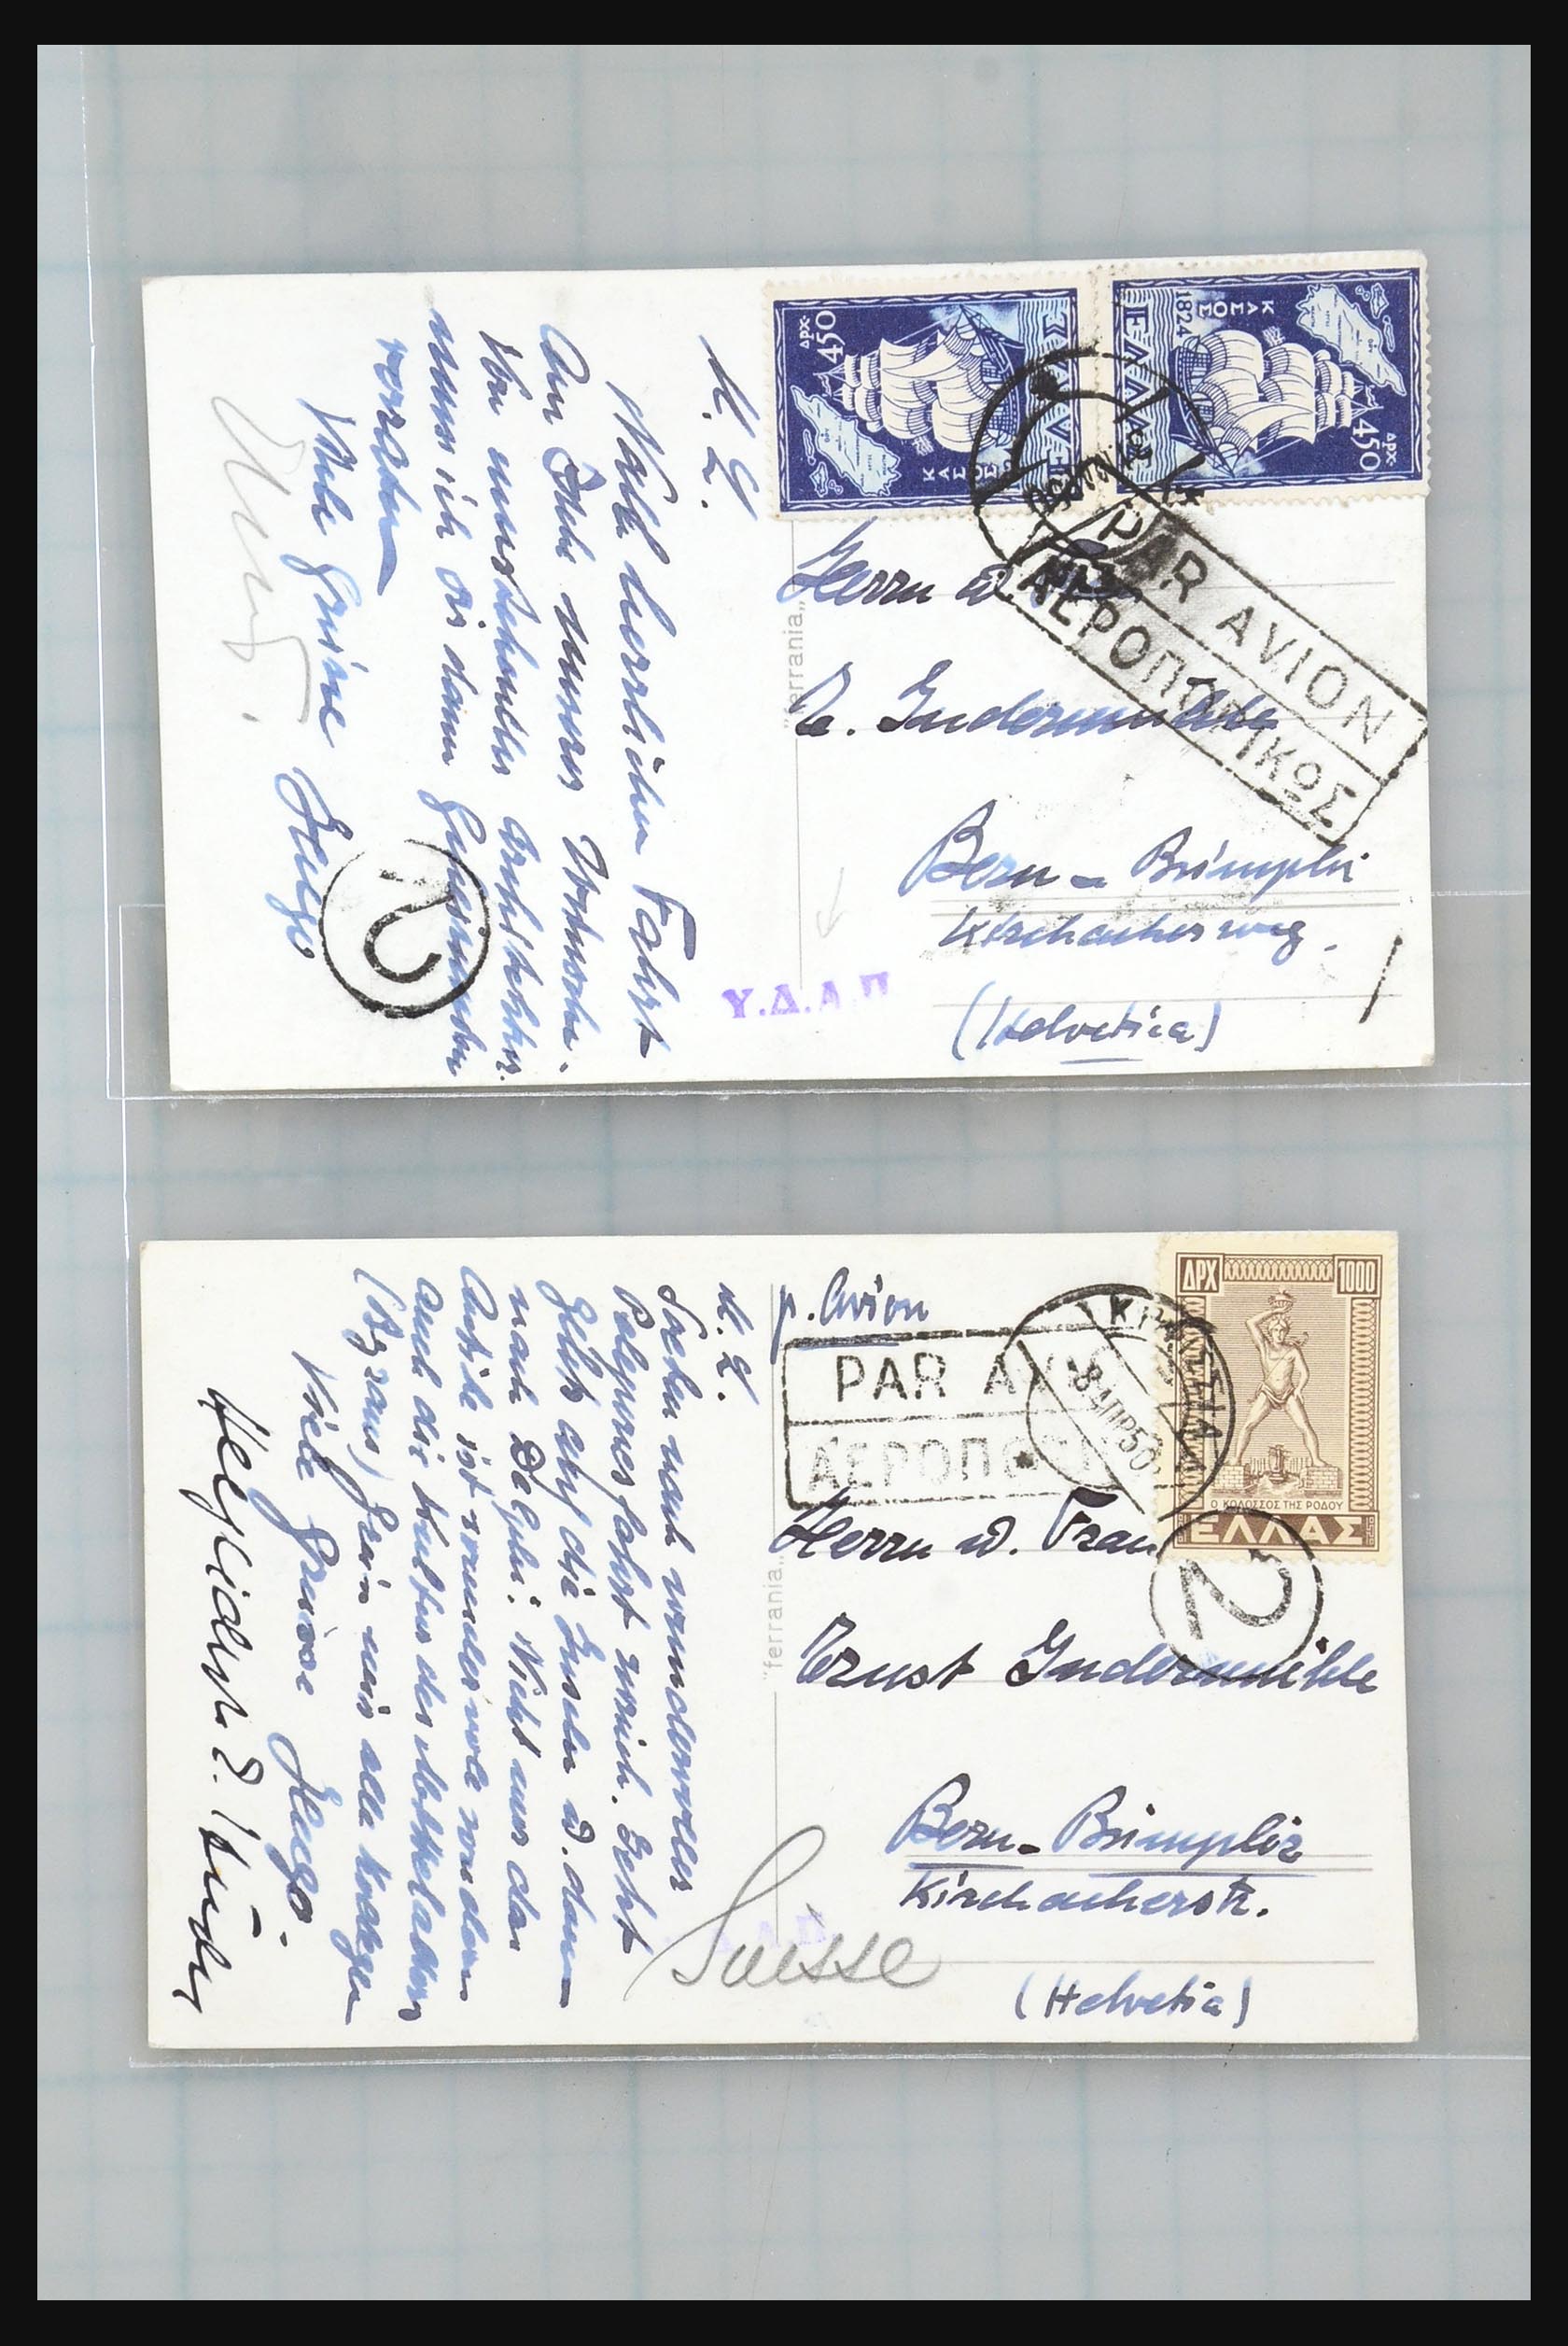 31358 186 - 31358 Portugal/Luxemburg/Griekenland brieven 1880-1960.